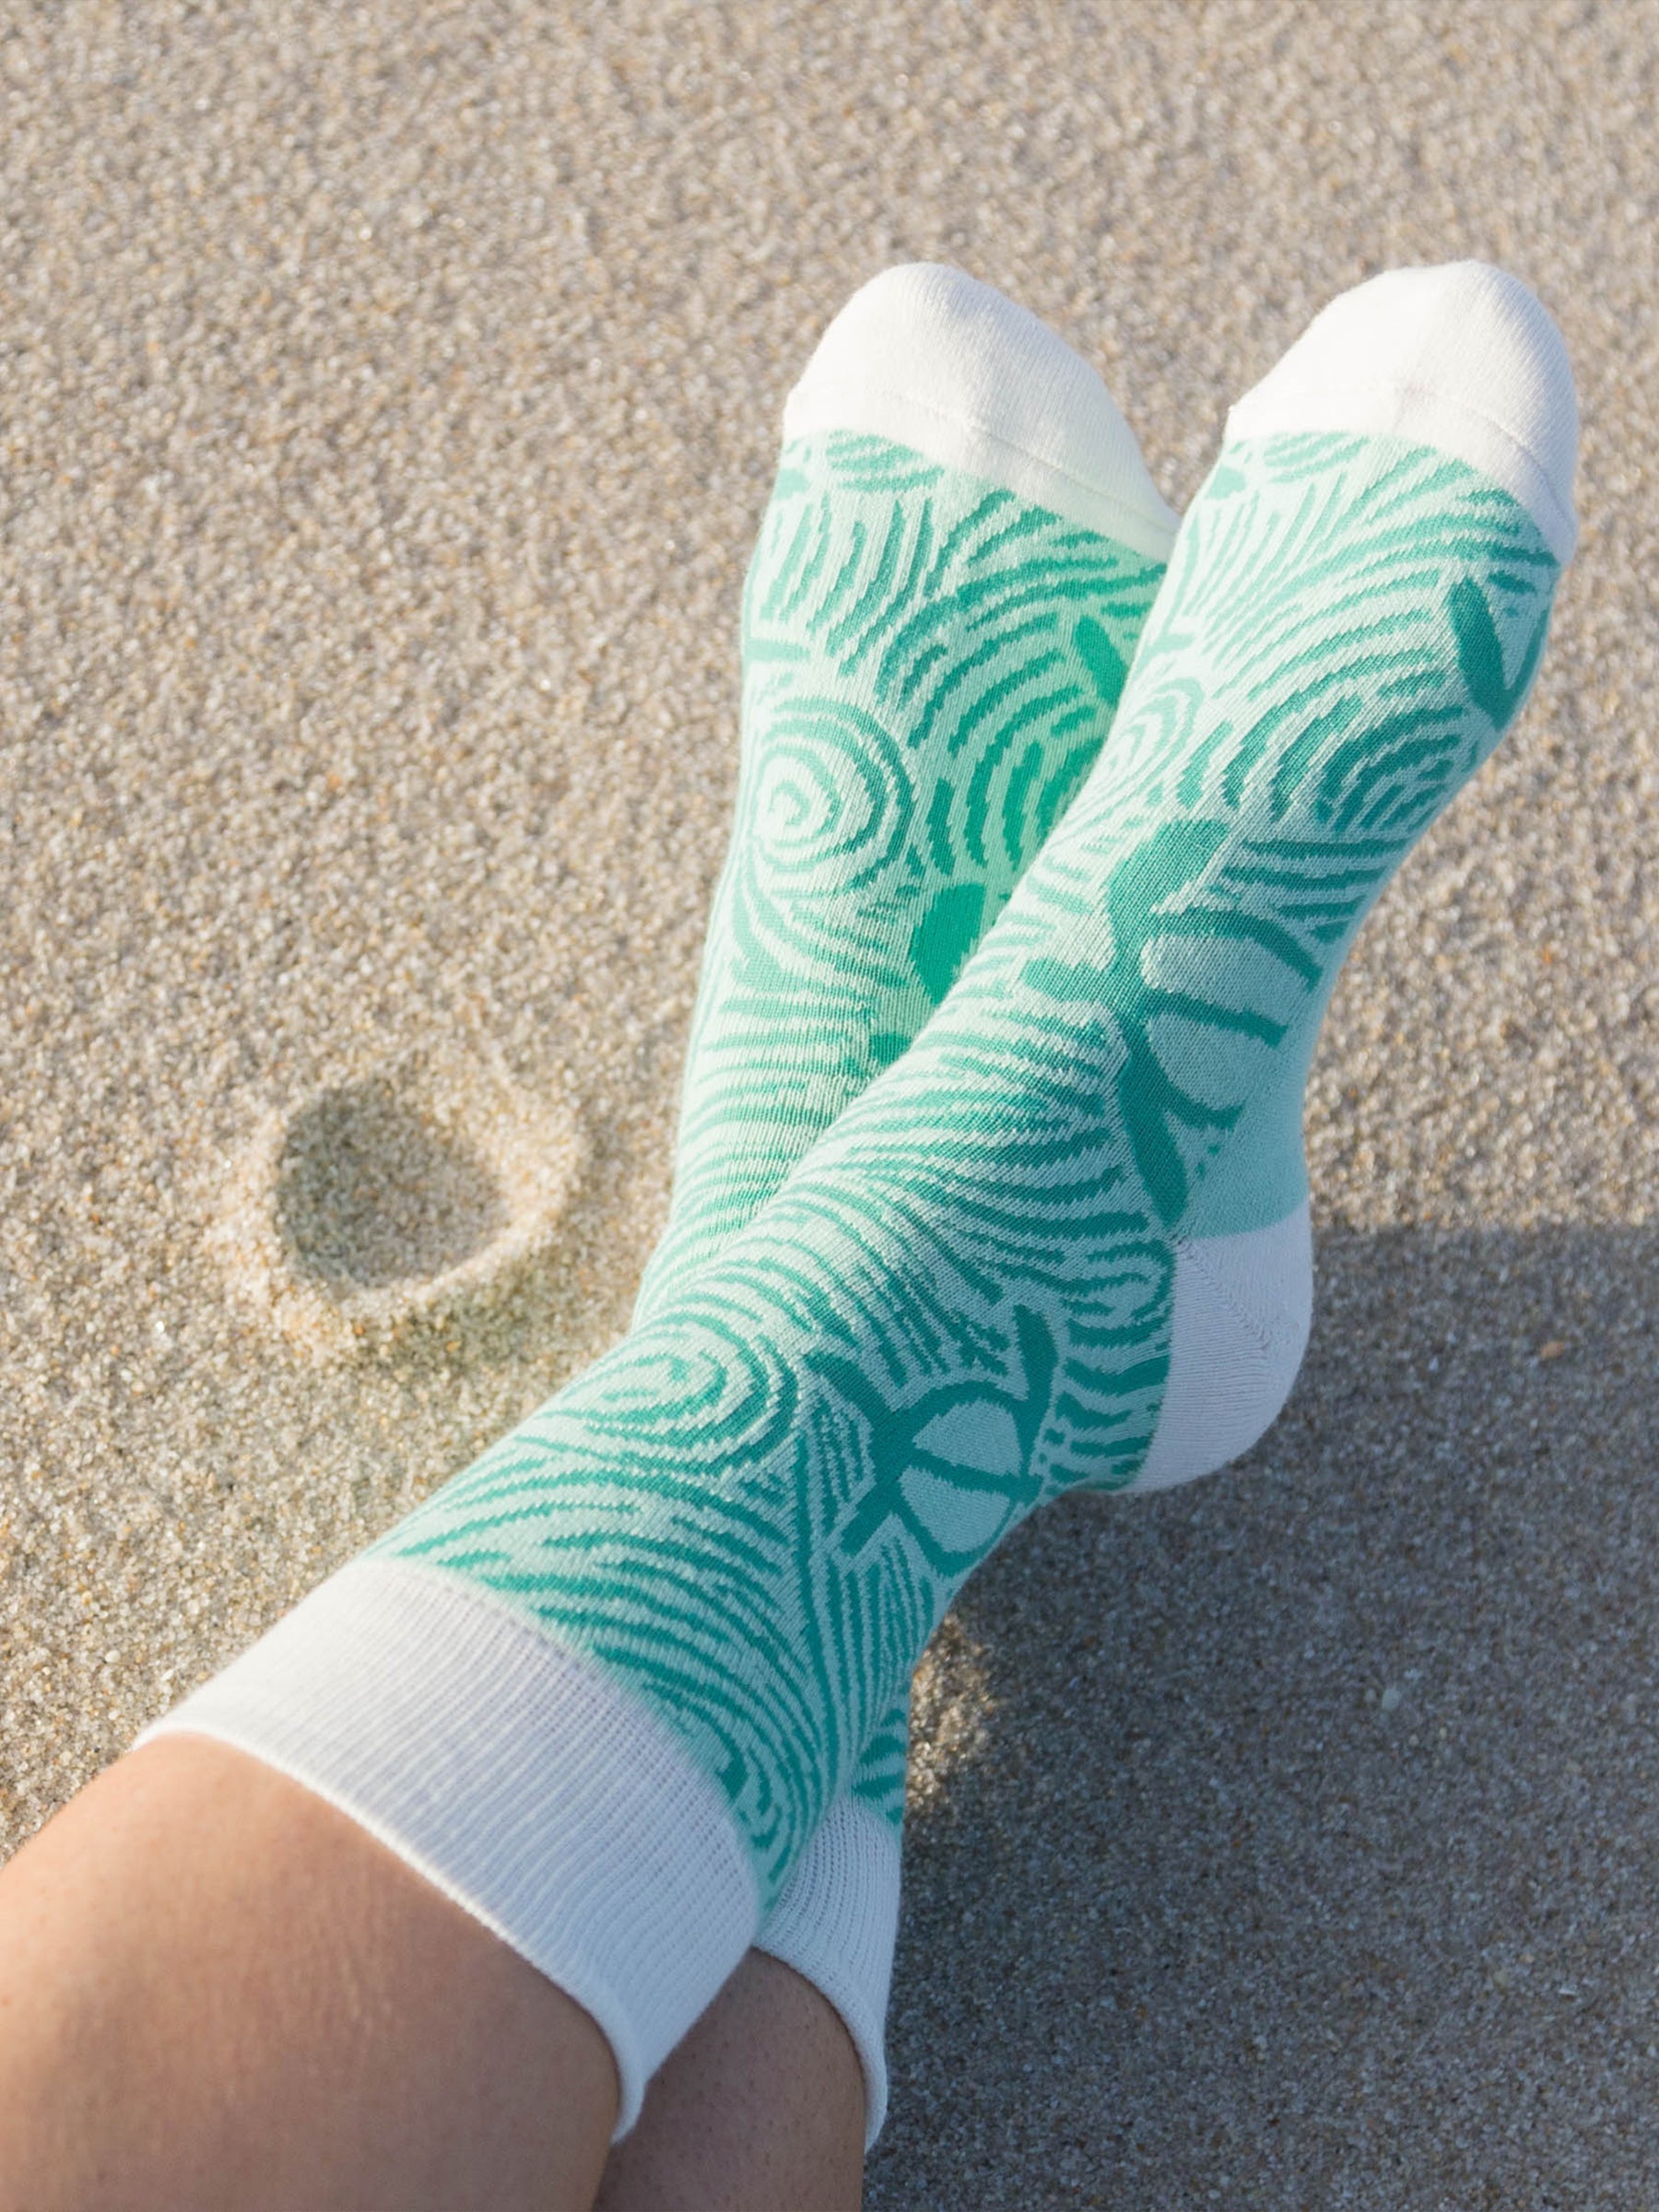 Sea Turtle Socks by Happy Earth